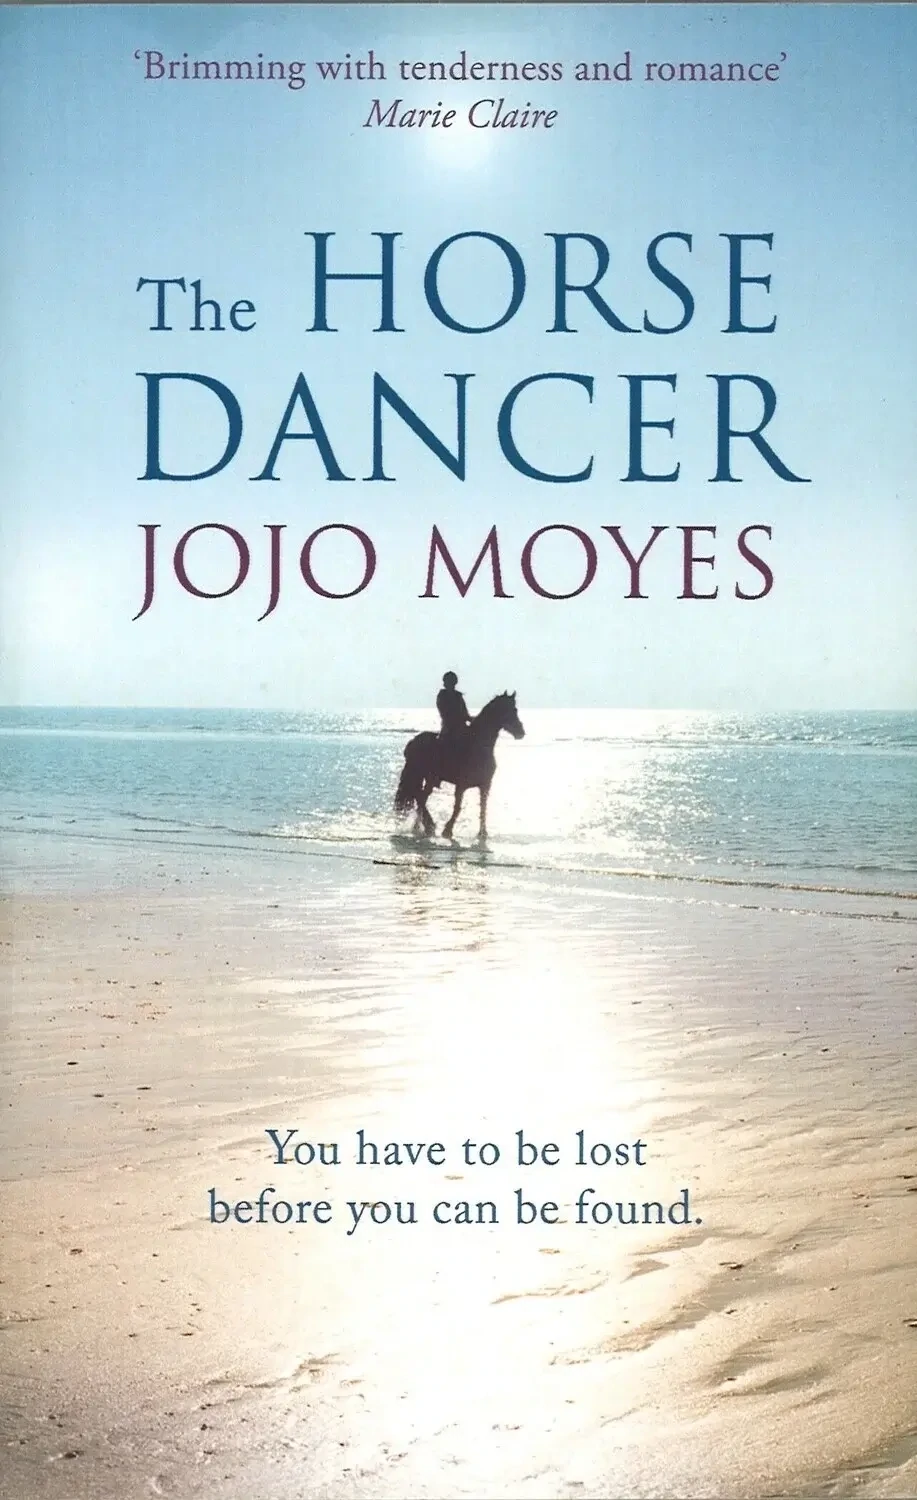 The Horse Dancer by Jojo Moyes